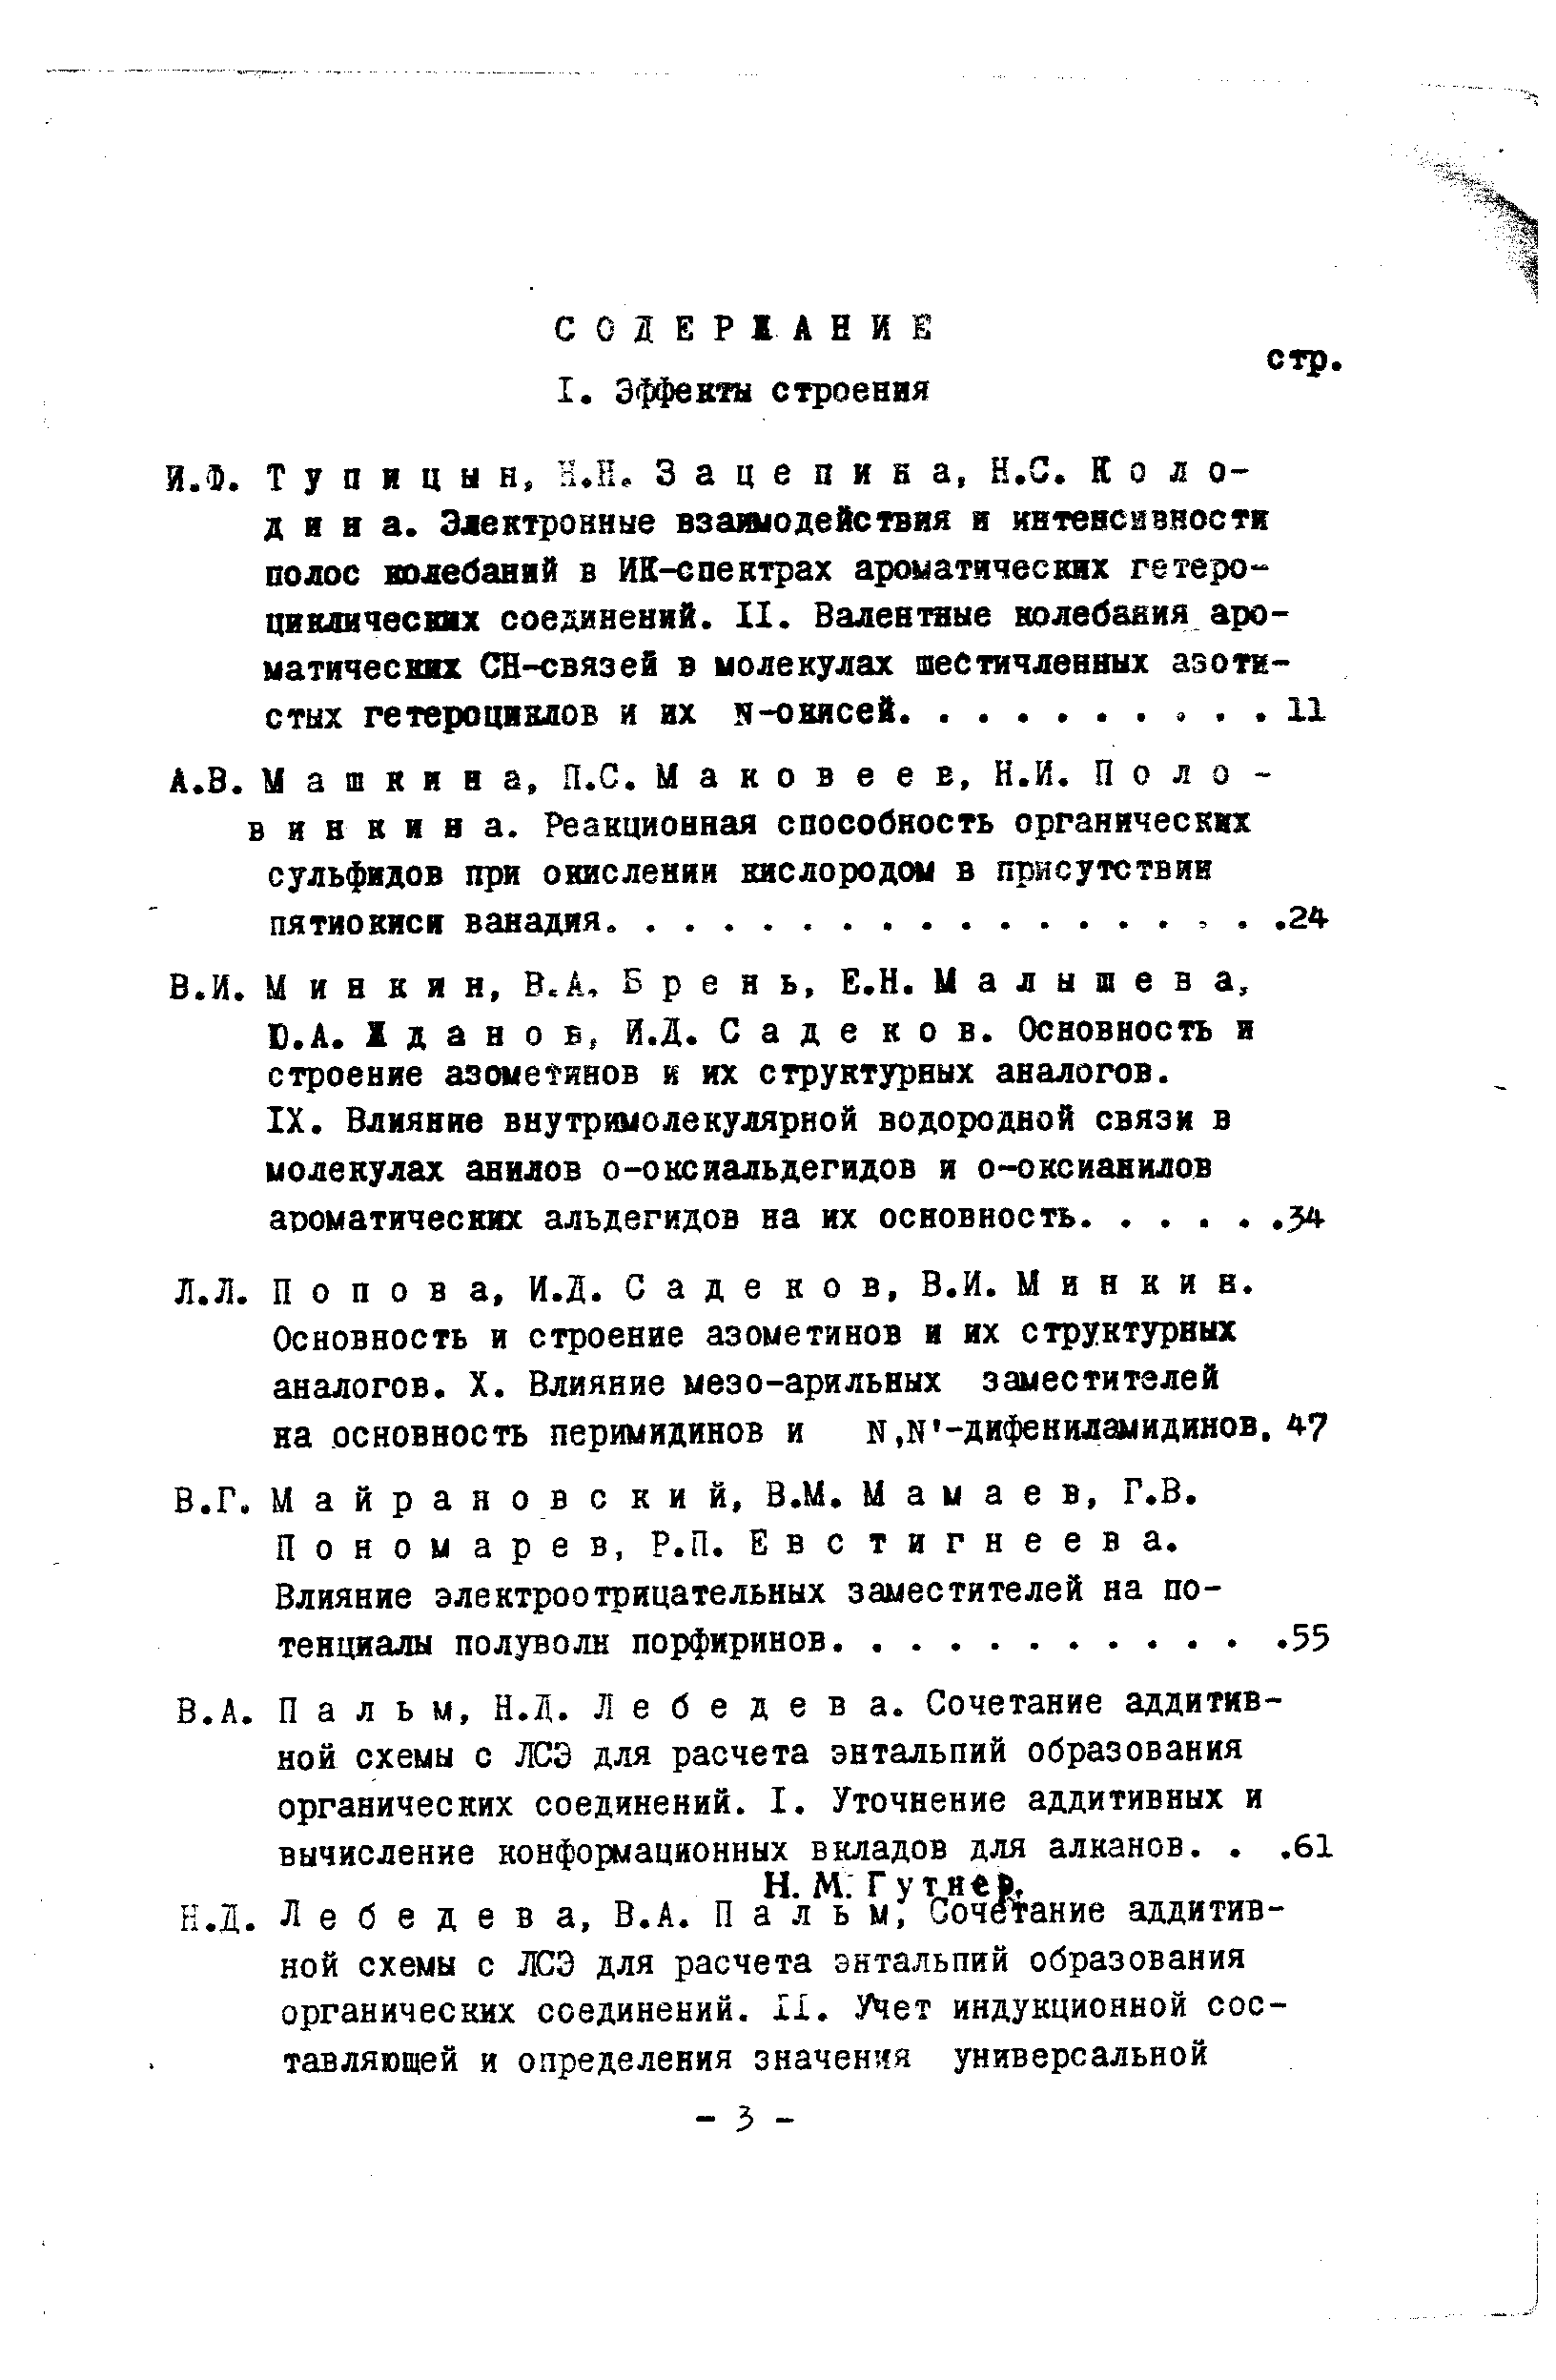 Майрановский, В.М. Мамаев, Г.В. Пономарев, Р.П. Евстигнеева.